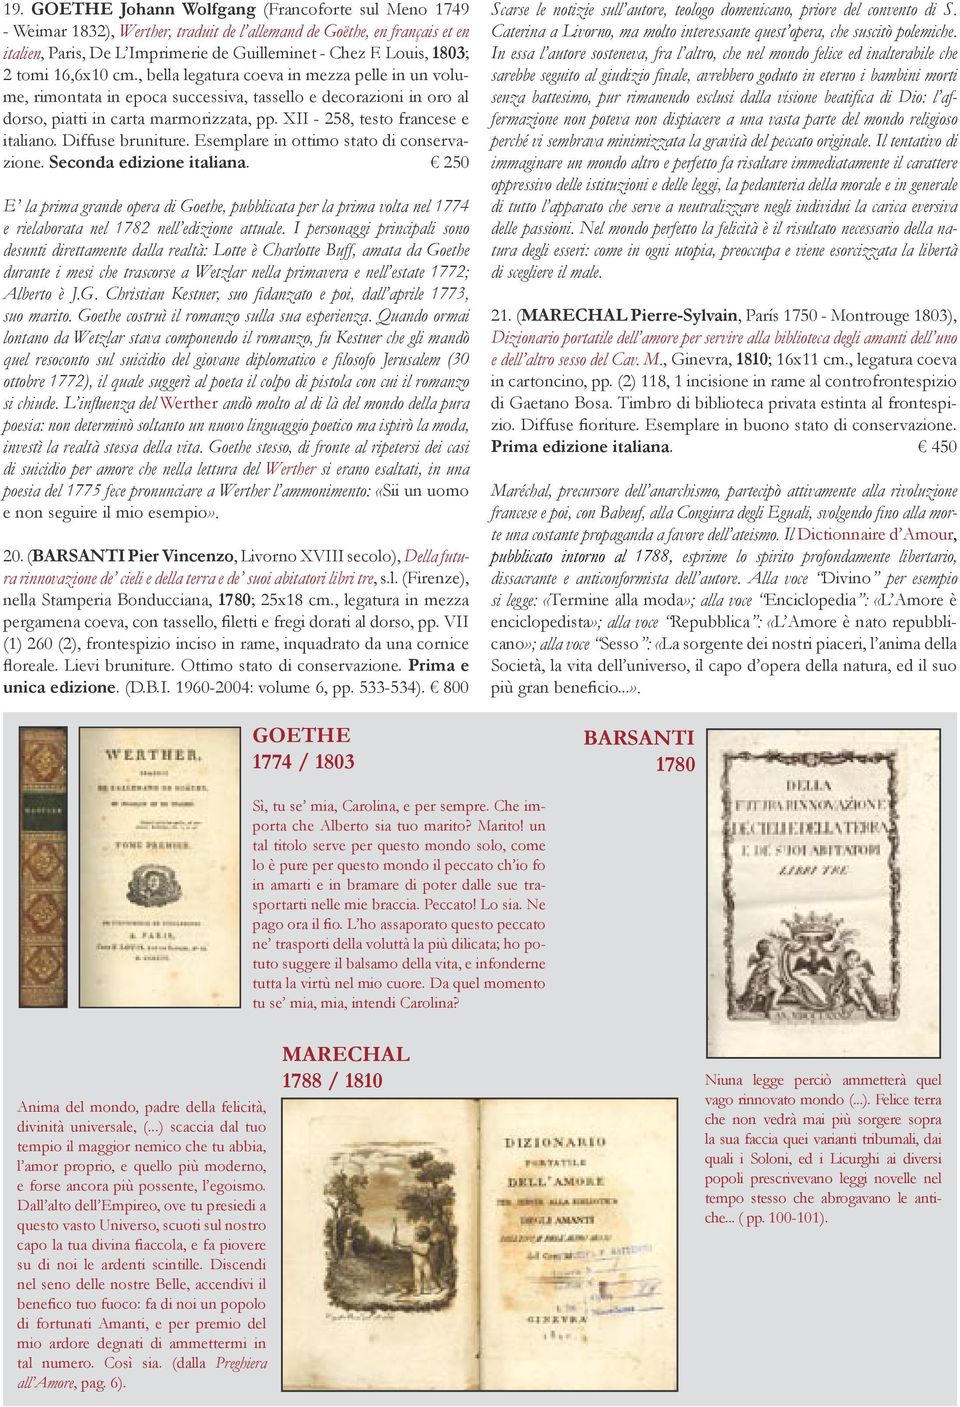 XII - 258, testo francese e italiano. Diffuse bruniture. Esemplare in ottimo stato di conservazione. Seconda edizione italiana.